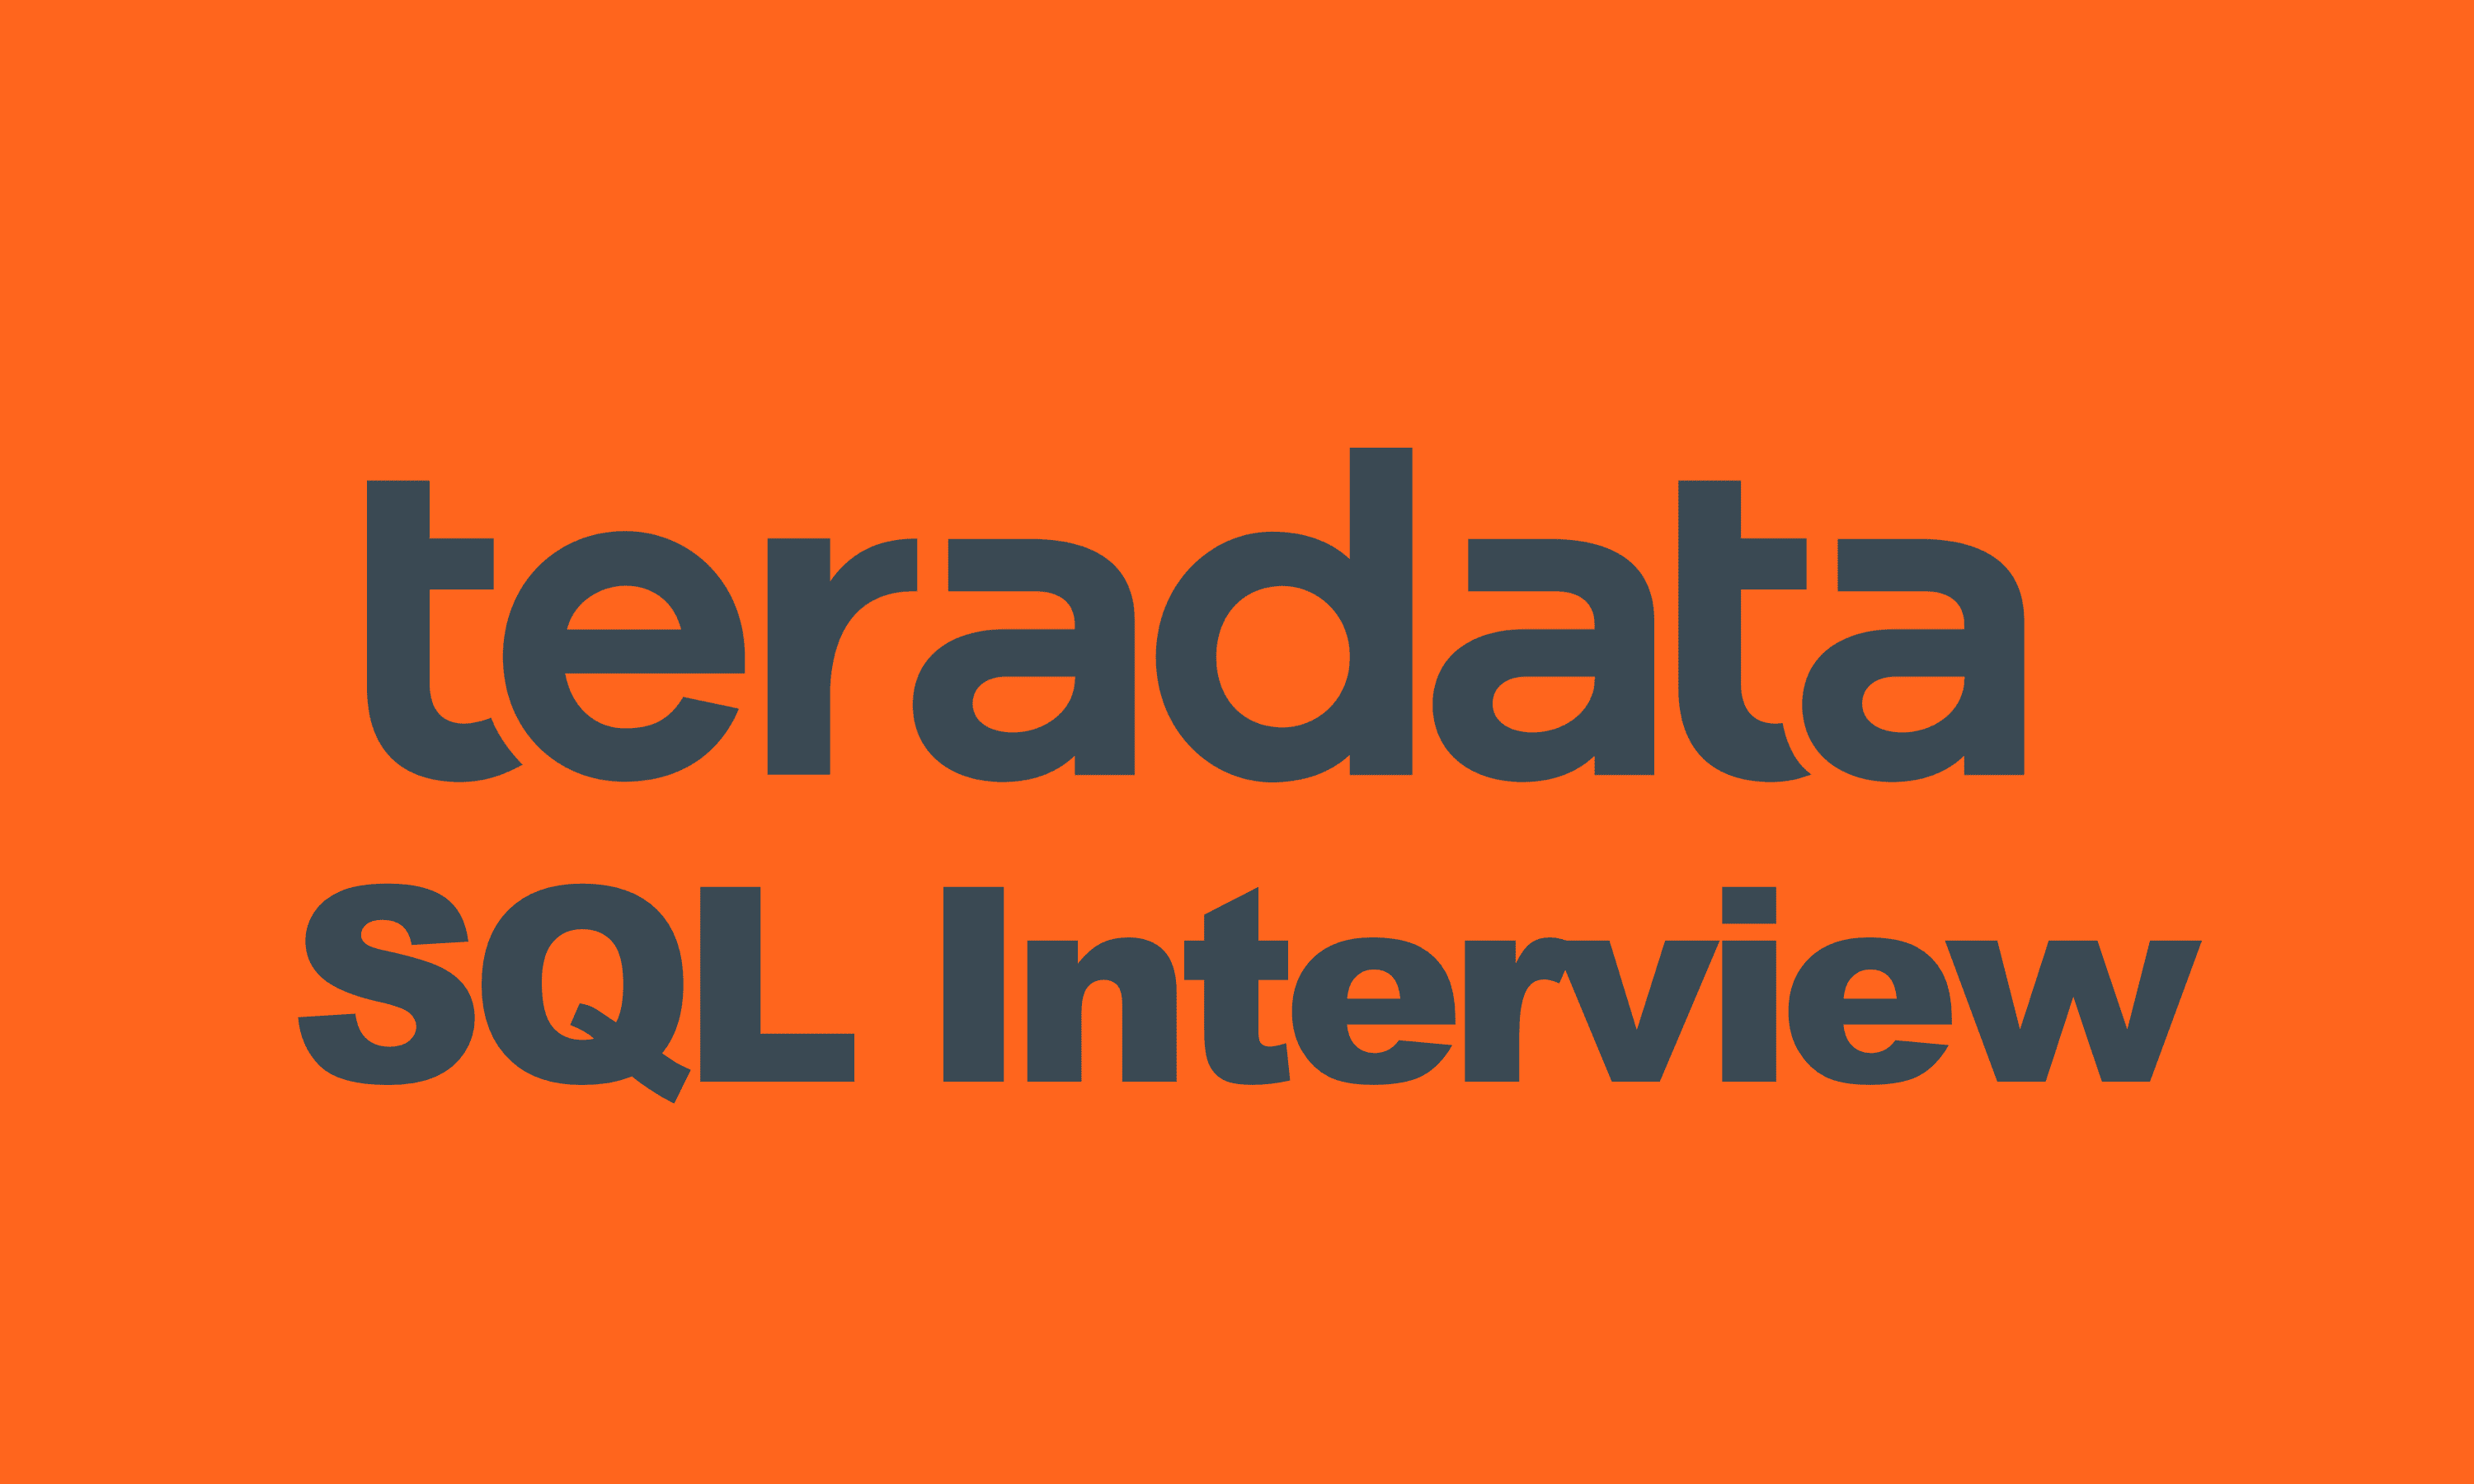 Teradata SQL Interview Questions